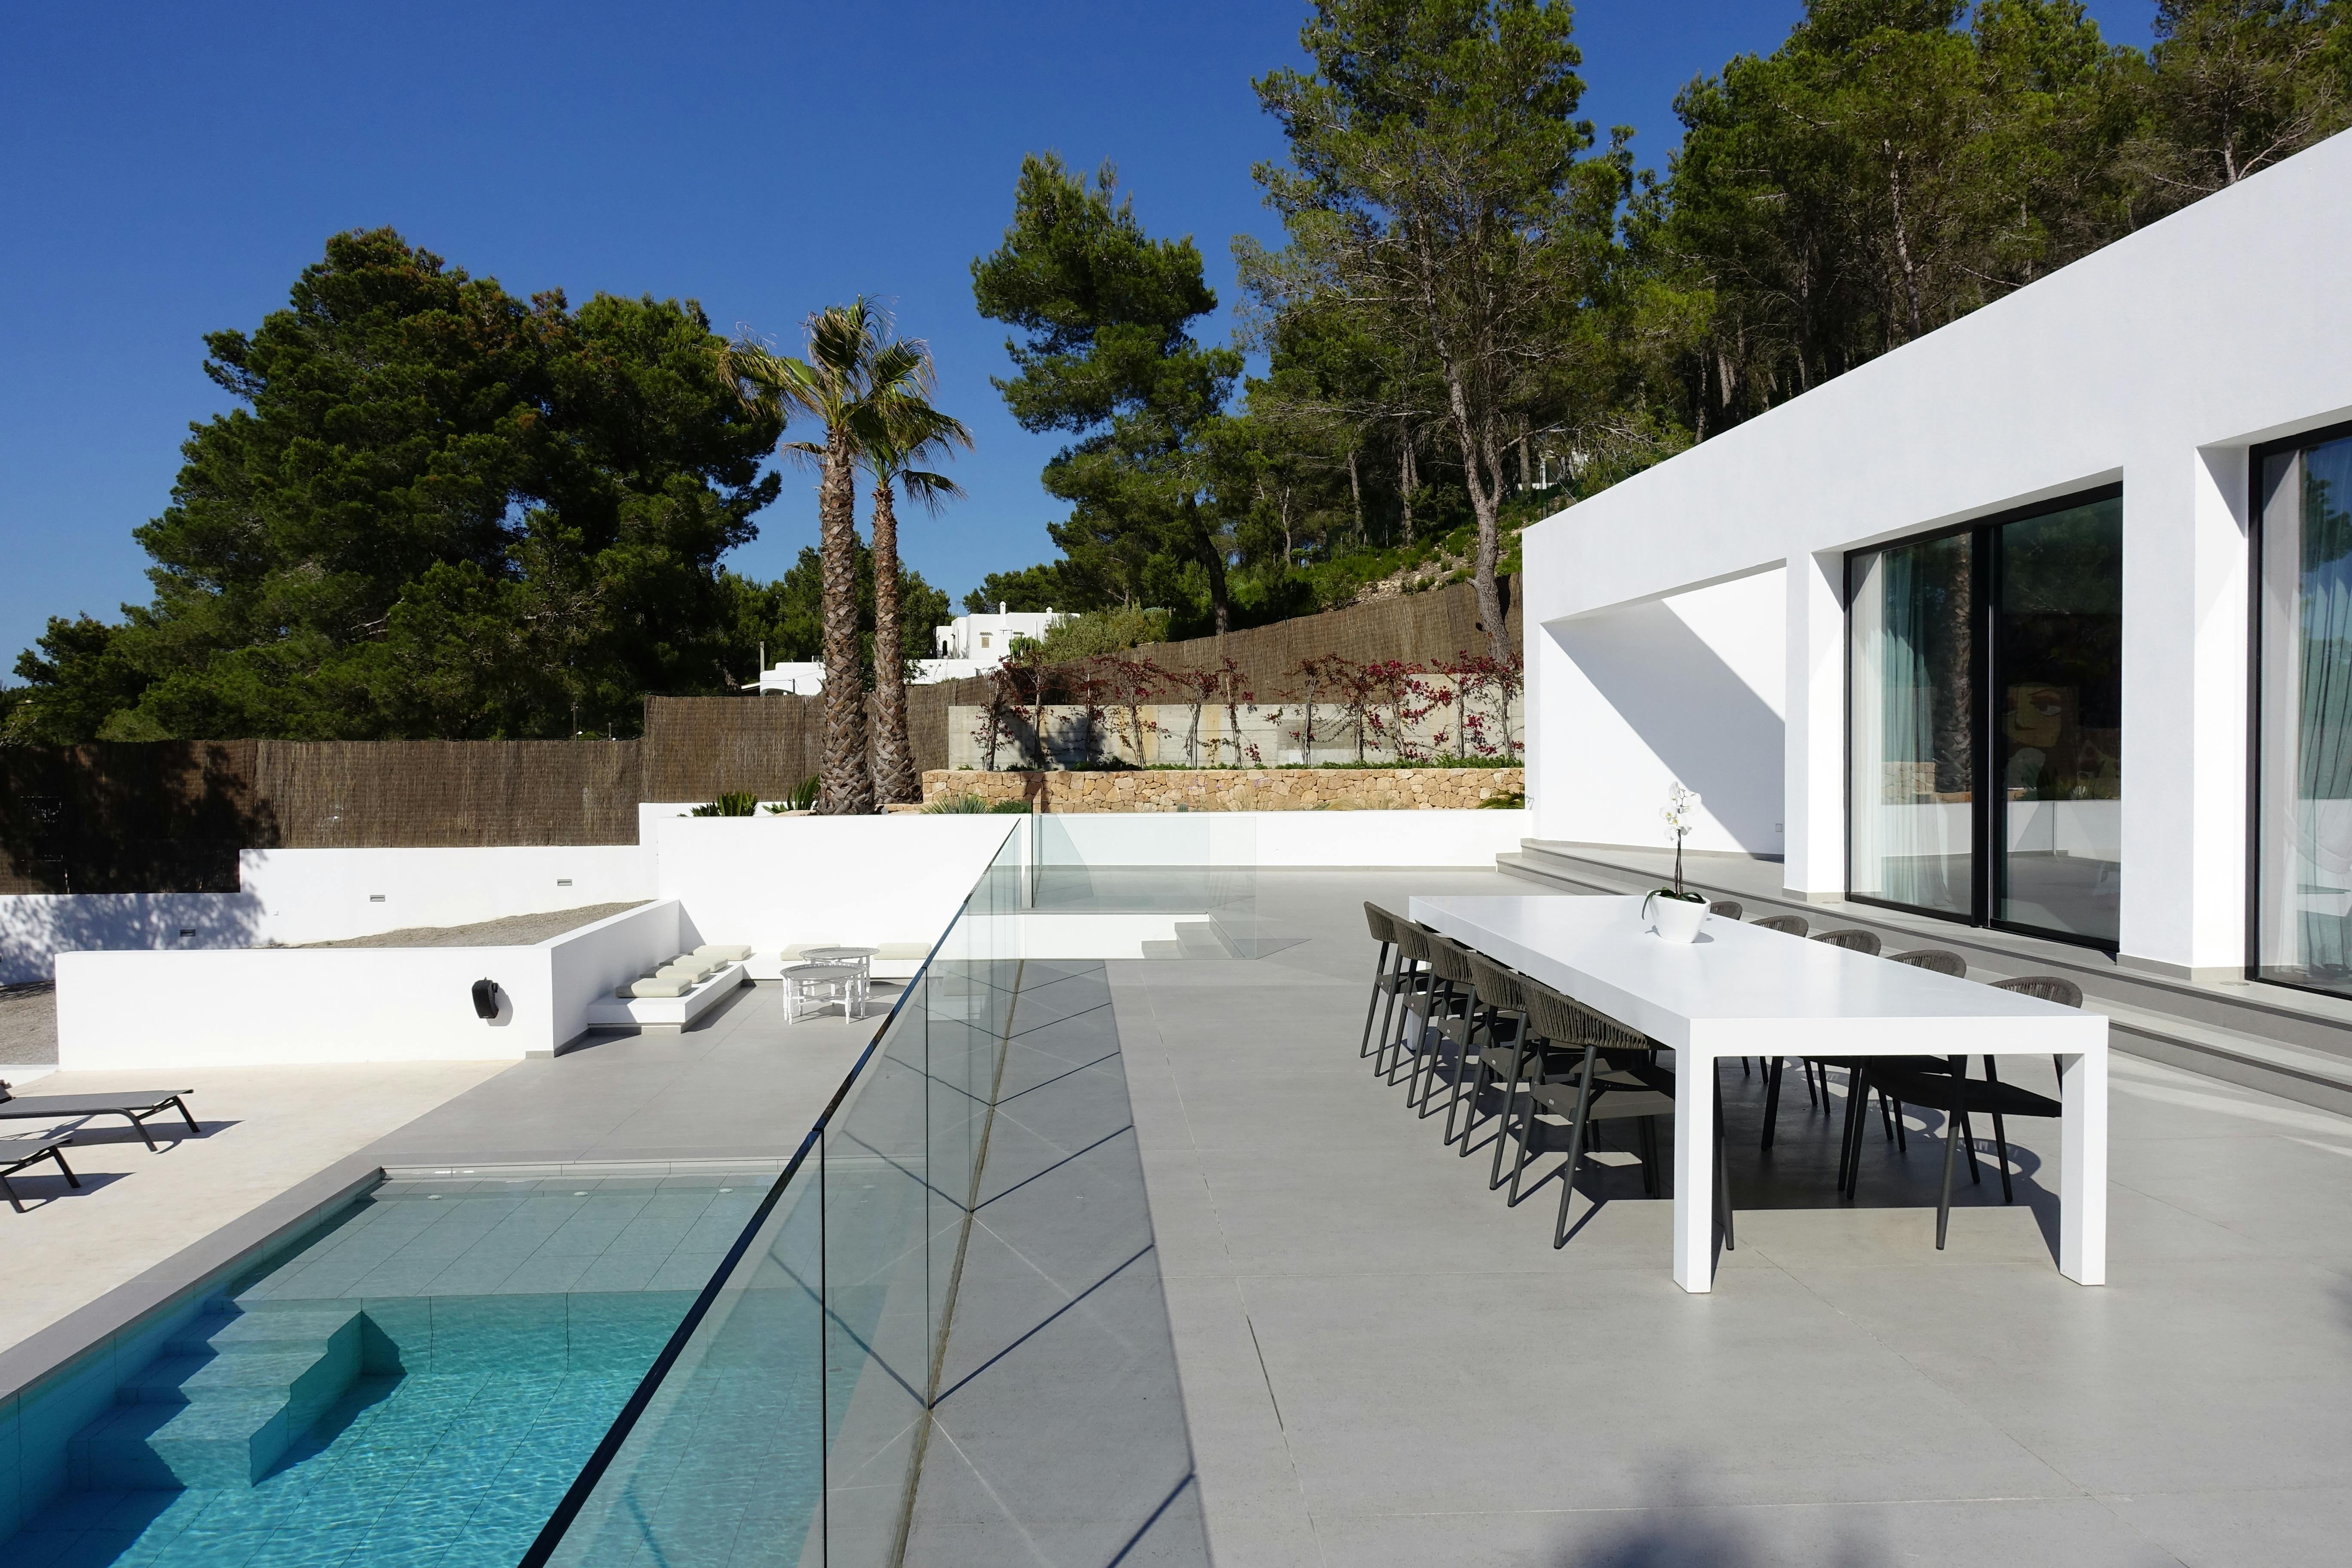 Numero immagine 33 della sezione corrente di Case Study Villa Omnia a Ibiza realizzata con DKTN® e Silestone® by Cosentino di Cosentino Italia